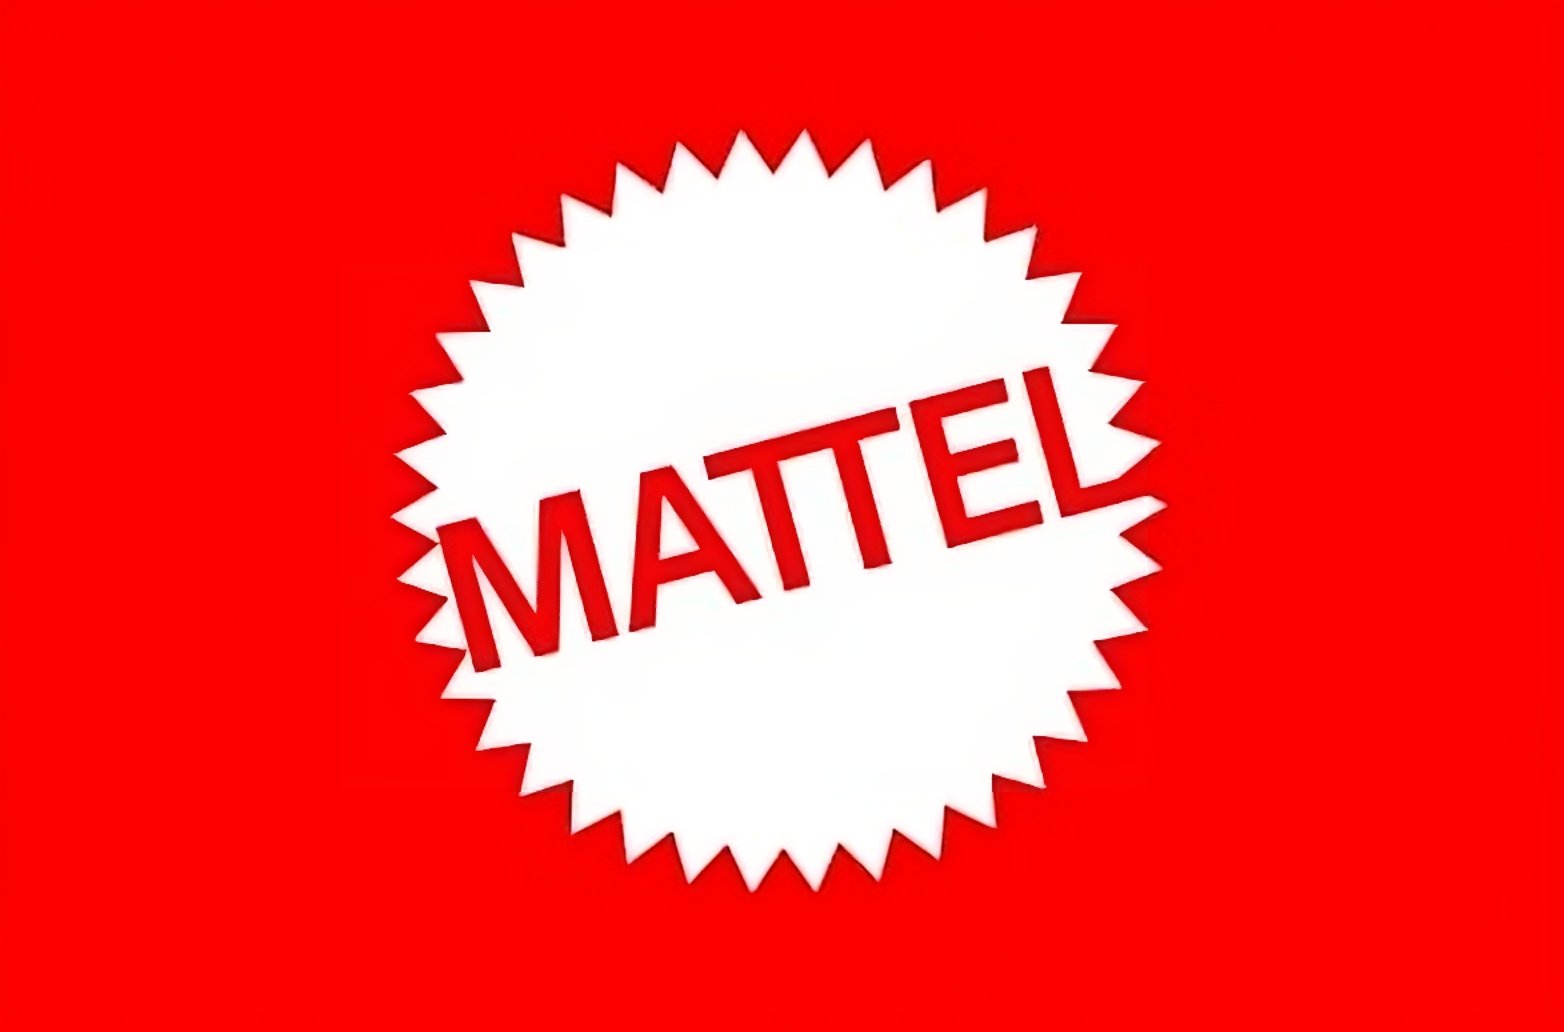 Mattel - Arditex S.A.